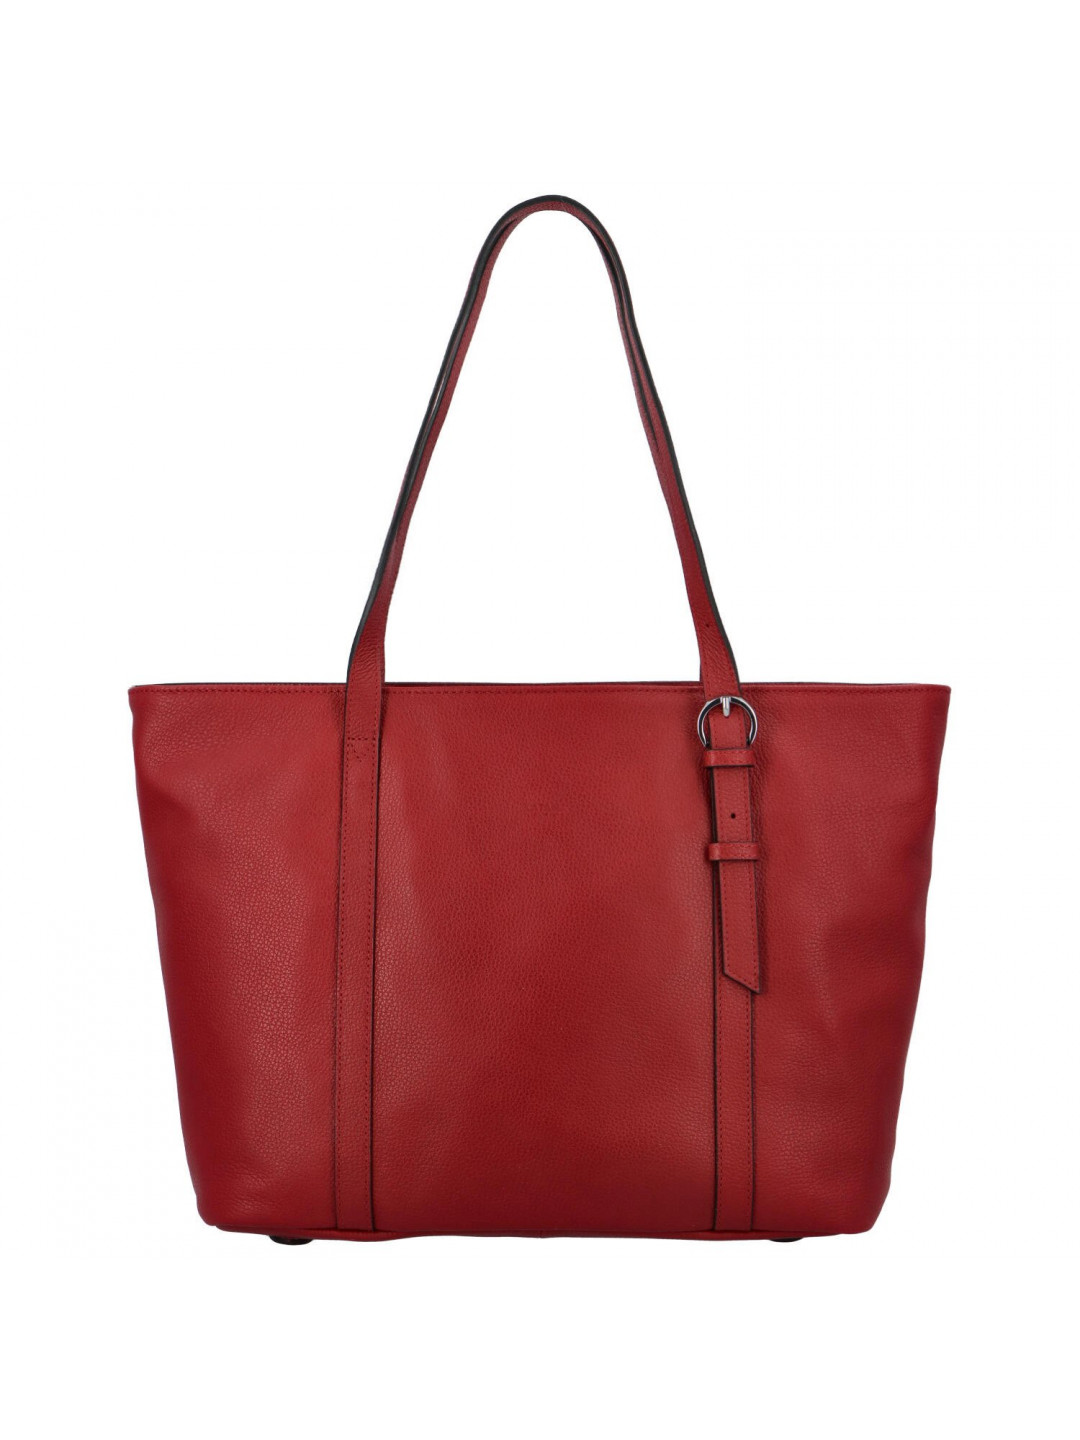 Luxusní dámská kožená kabelka Katana Siva červená